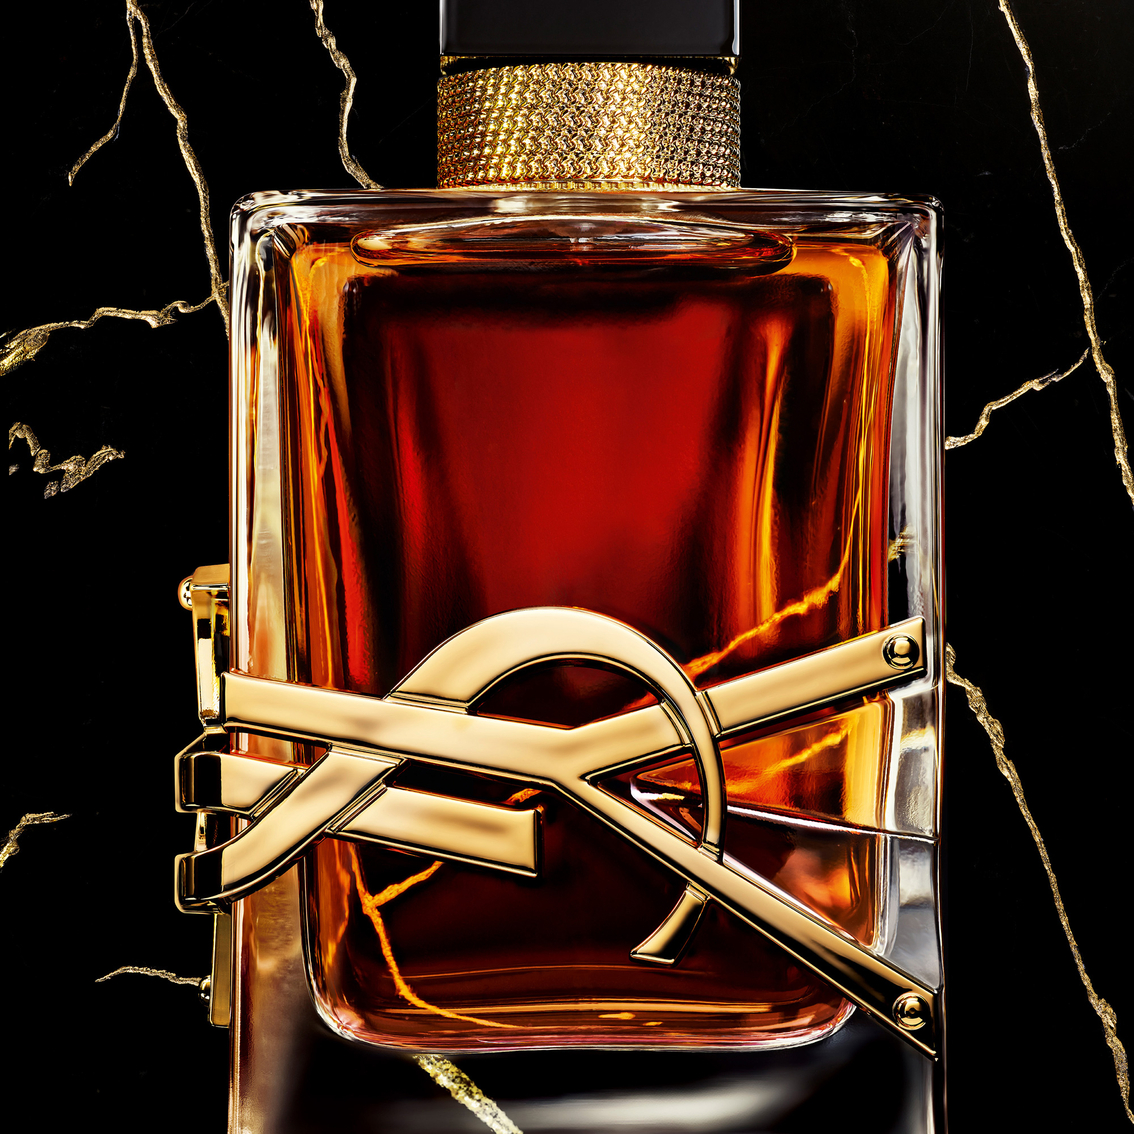 Yves Saint Laurent Libre Le Parfum - Image 3 of 7